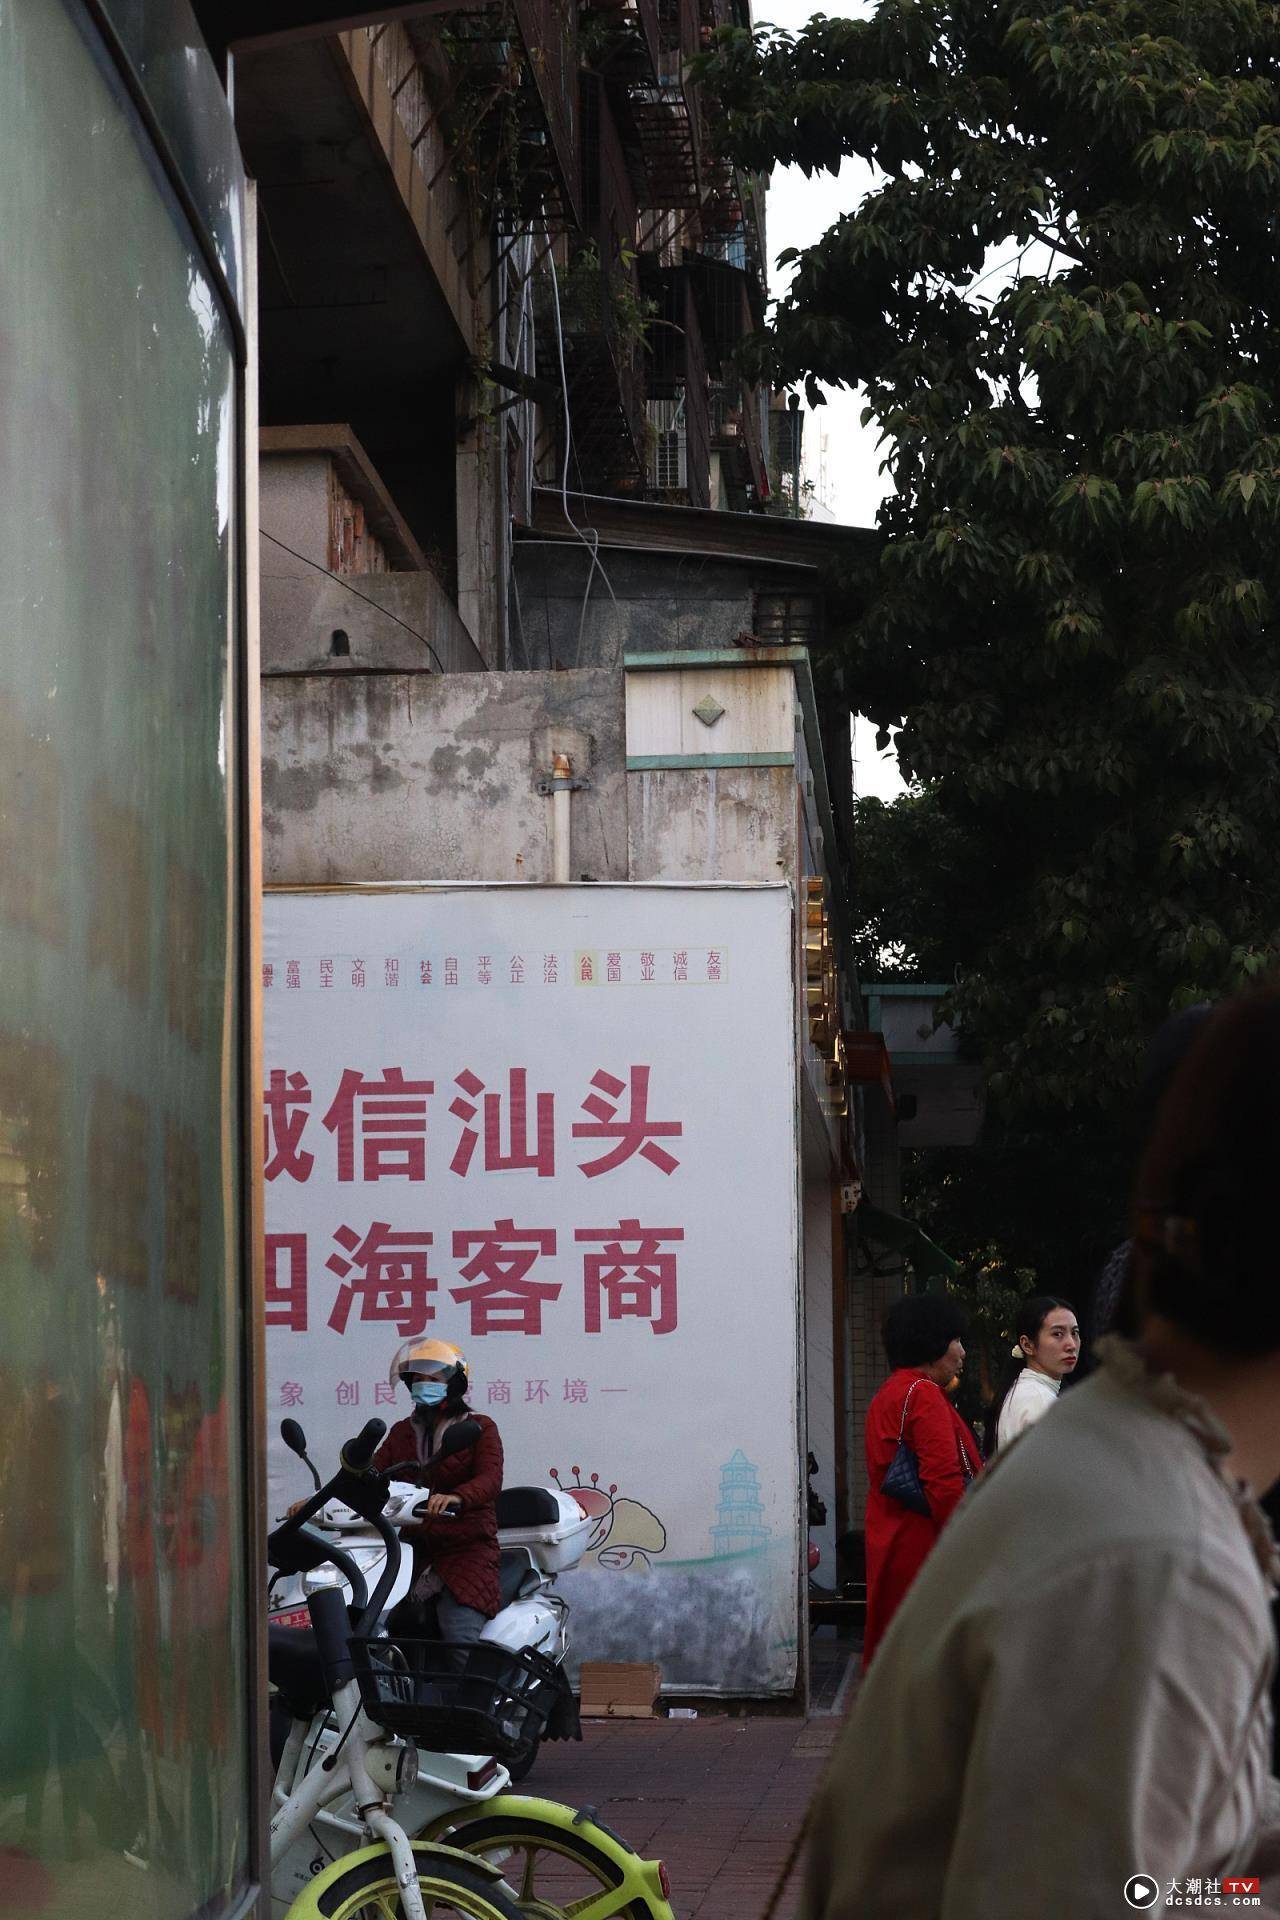 整座城市比较浓郁的潮汕风格和电影里老香港的感觉，大多数房子都很老很旧，比起我们四川老城区的房子还旧，很多没拆完还保留的店铺招牌，依旧是老香港的感觉